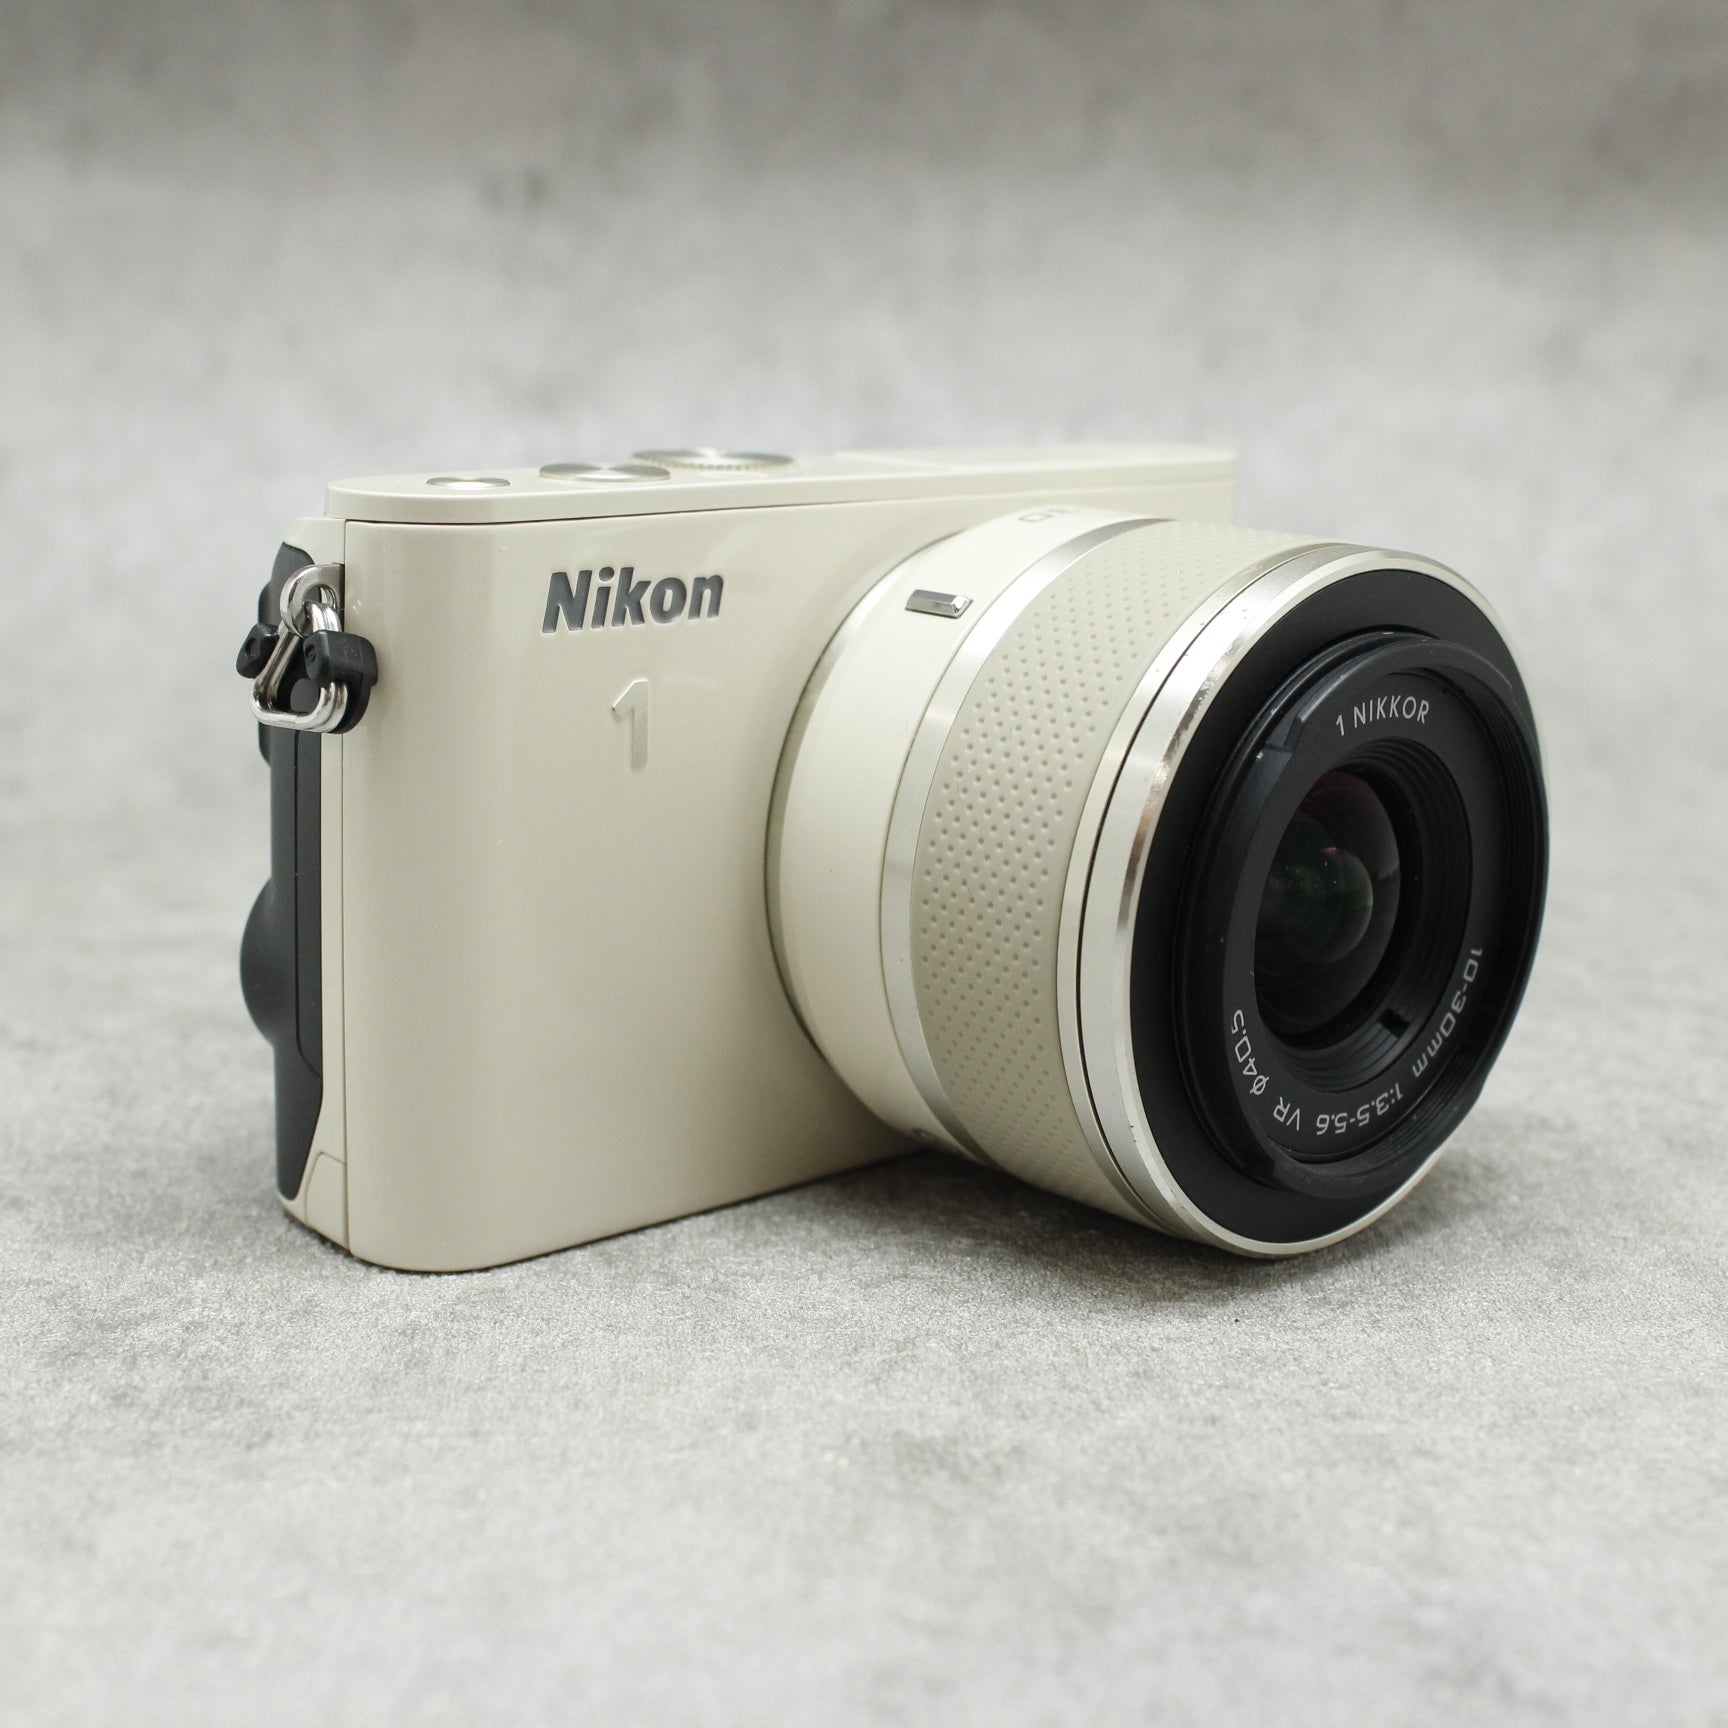 ミラーレス一眼カメラ Nikon 1 J3 標準ズームレンズ シルバー - www ...